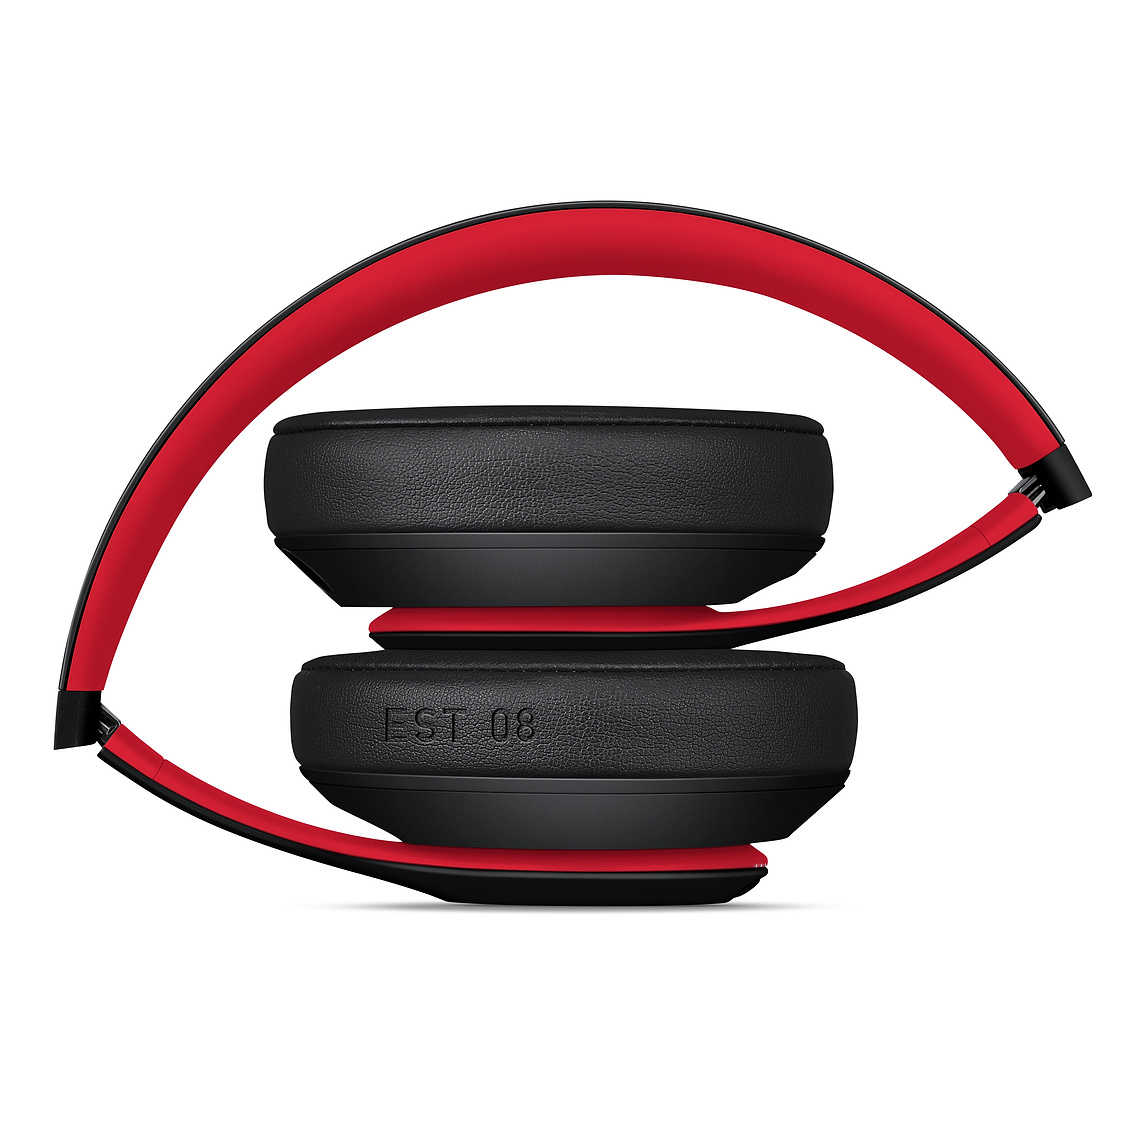 【Beats】Studio3 Wireless 十週年桀驁黑紅色 無線藍芽降噪 頭戴式耳機 ★免運★